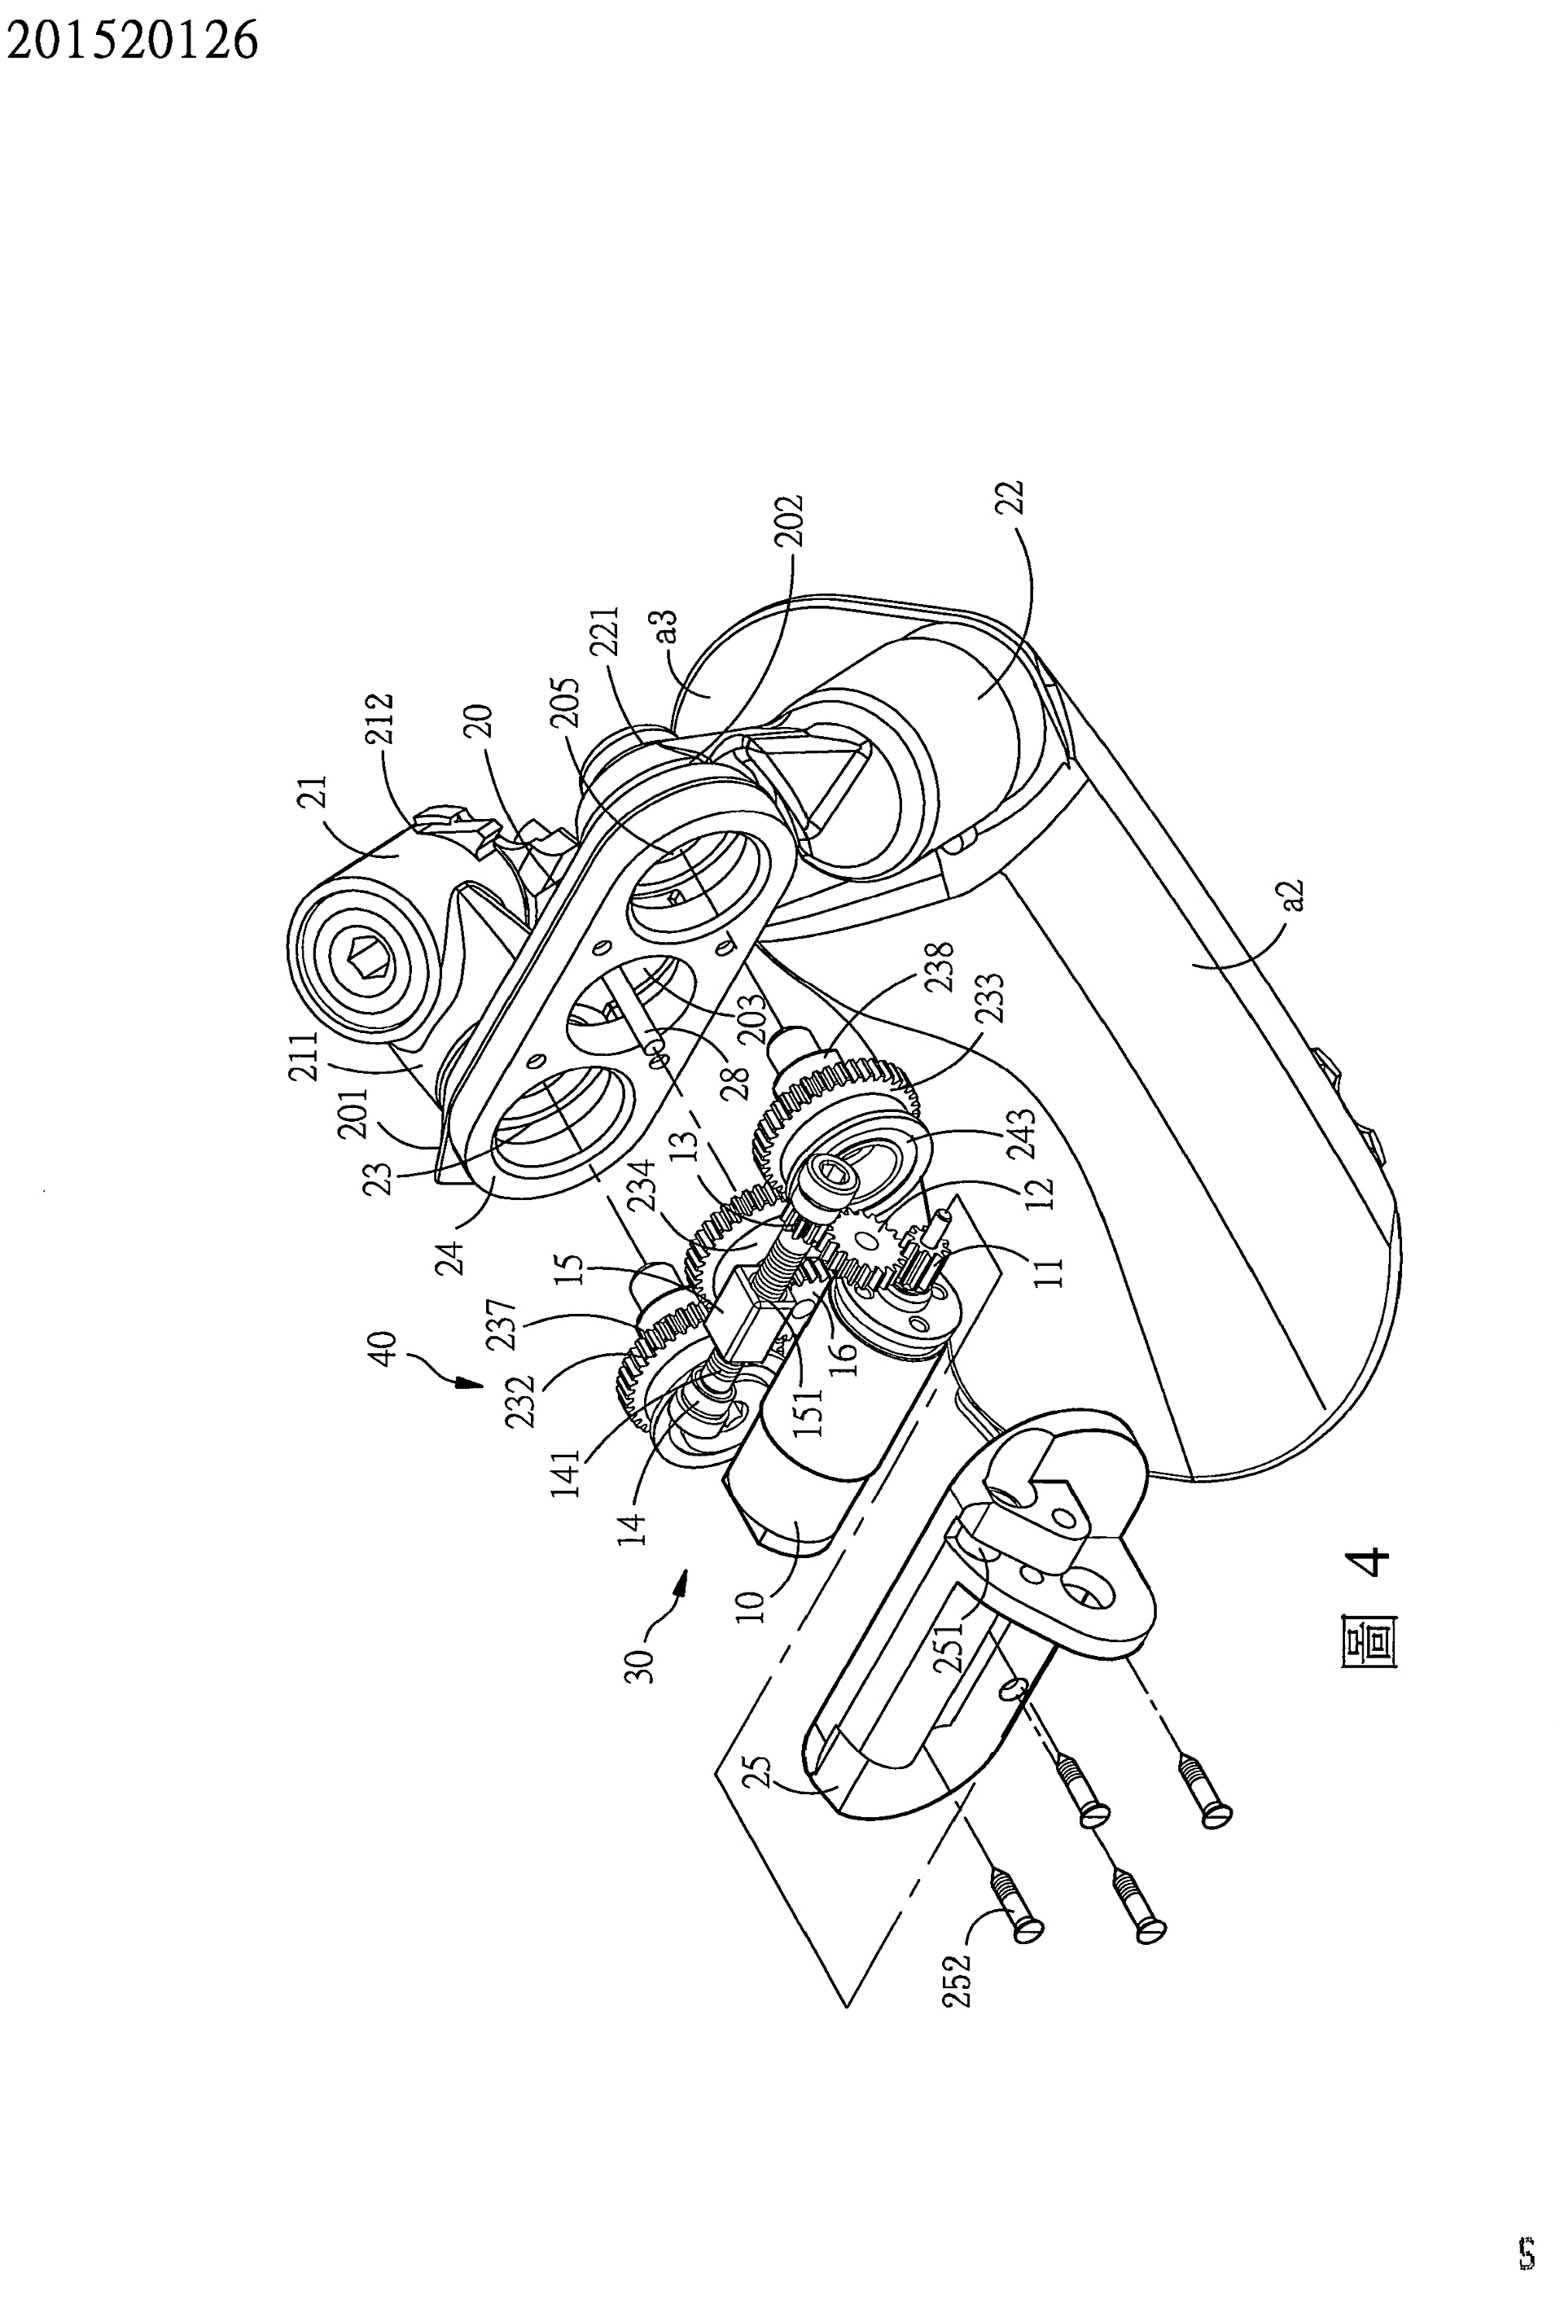 Taiwanese patent 201520126 - FSA scan 20 main image